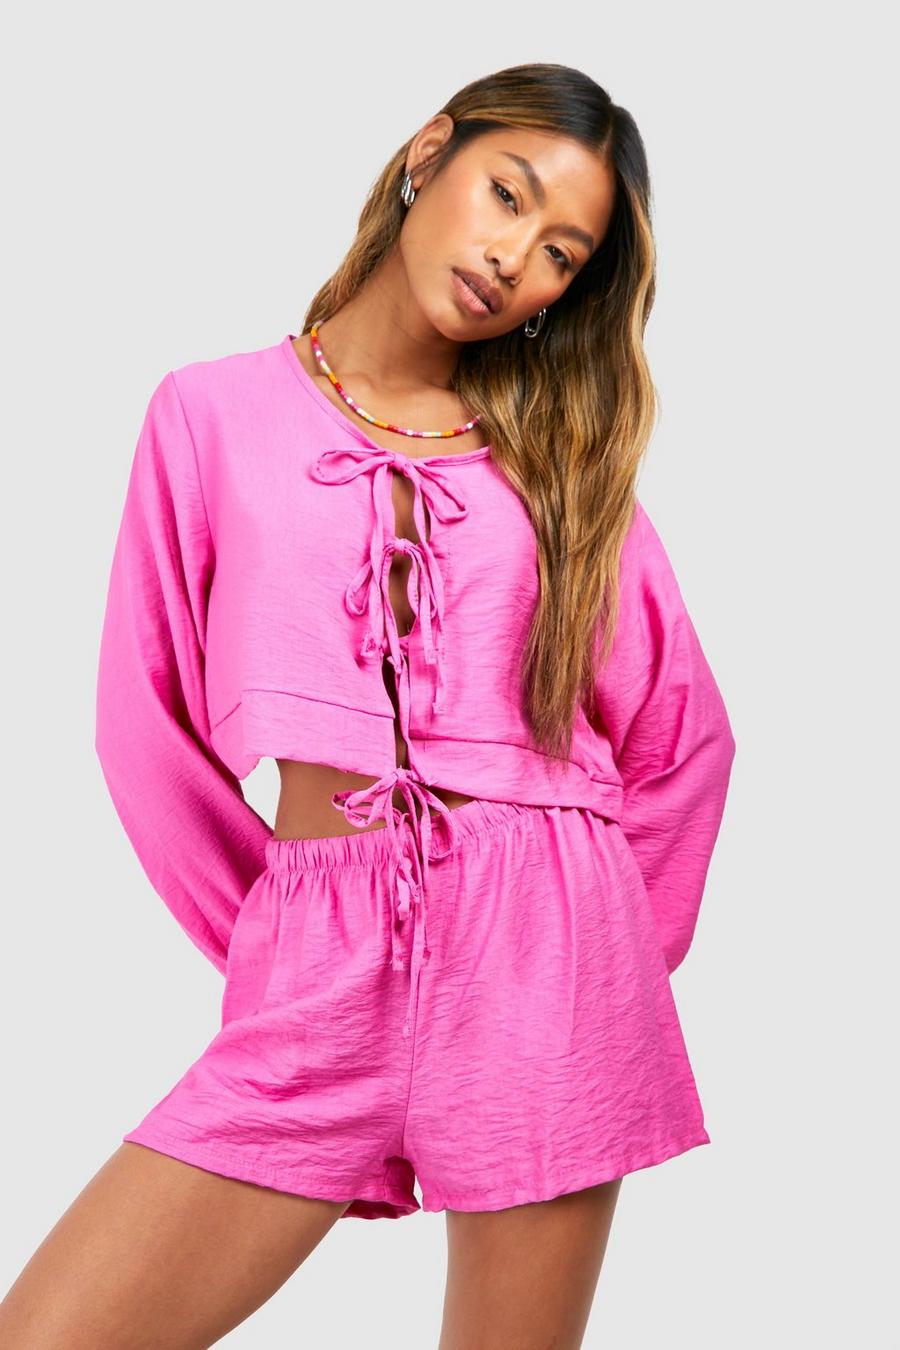 Blusa effetto lino con trama in rilievo, maniche ampie & pantaloncini morbidi, Candy pink